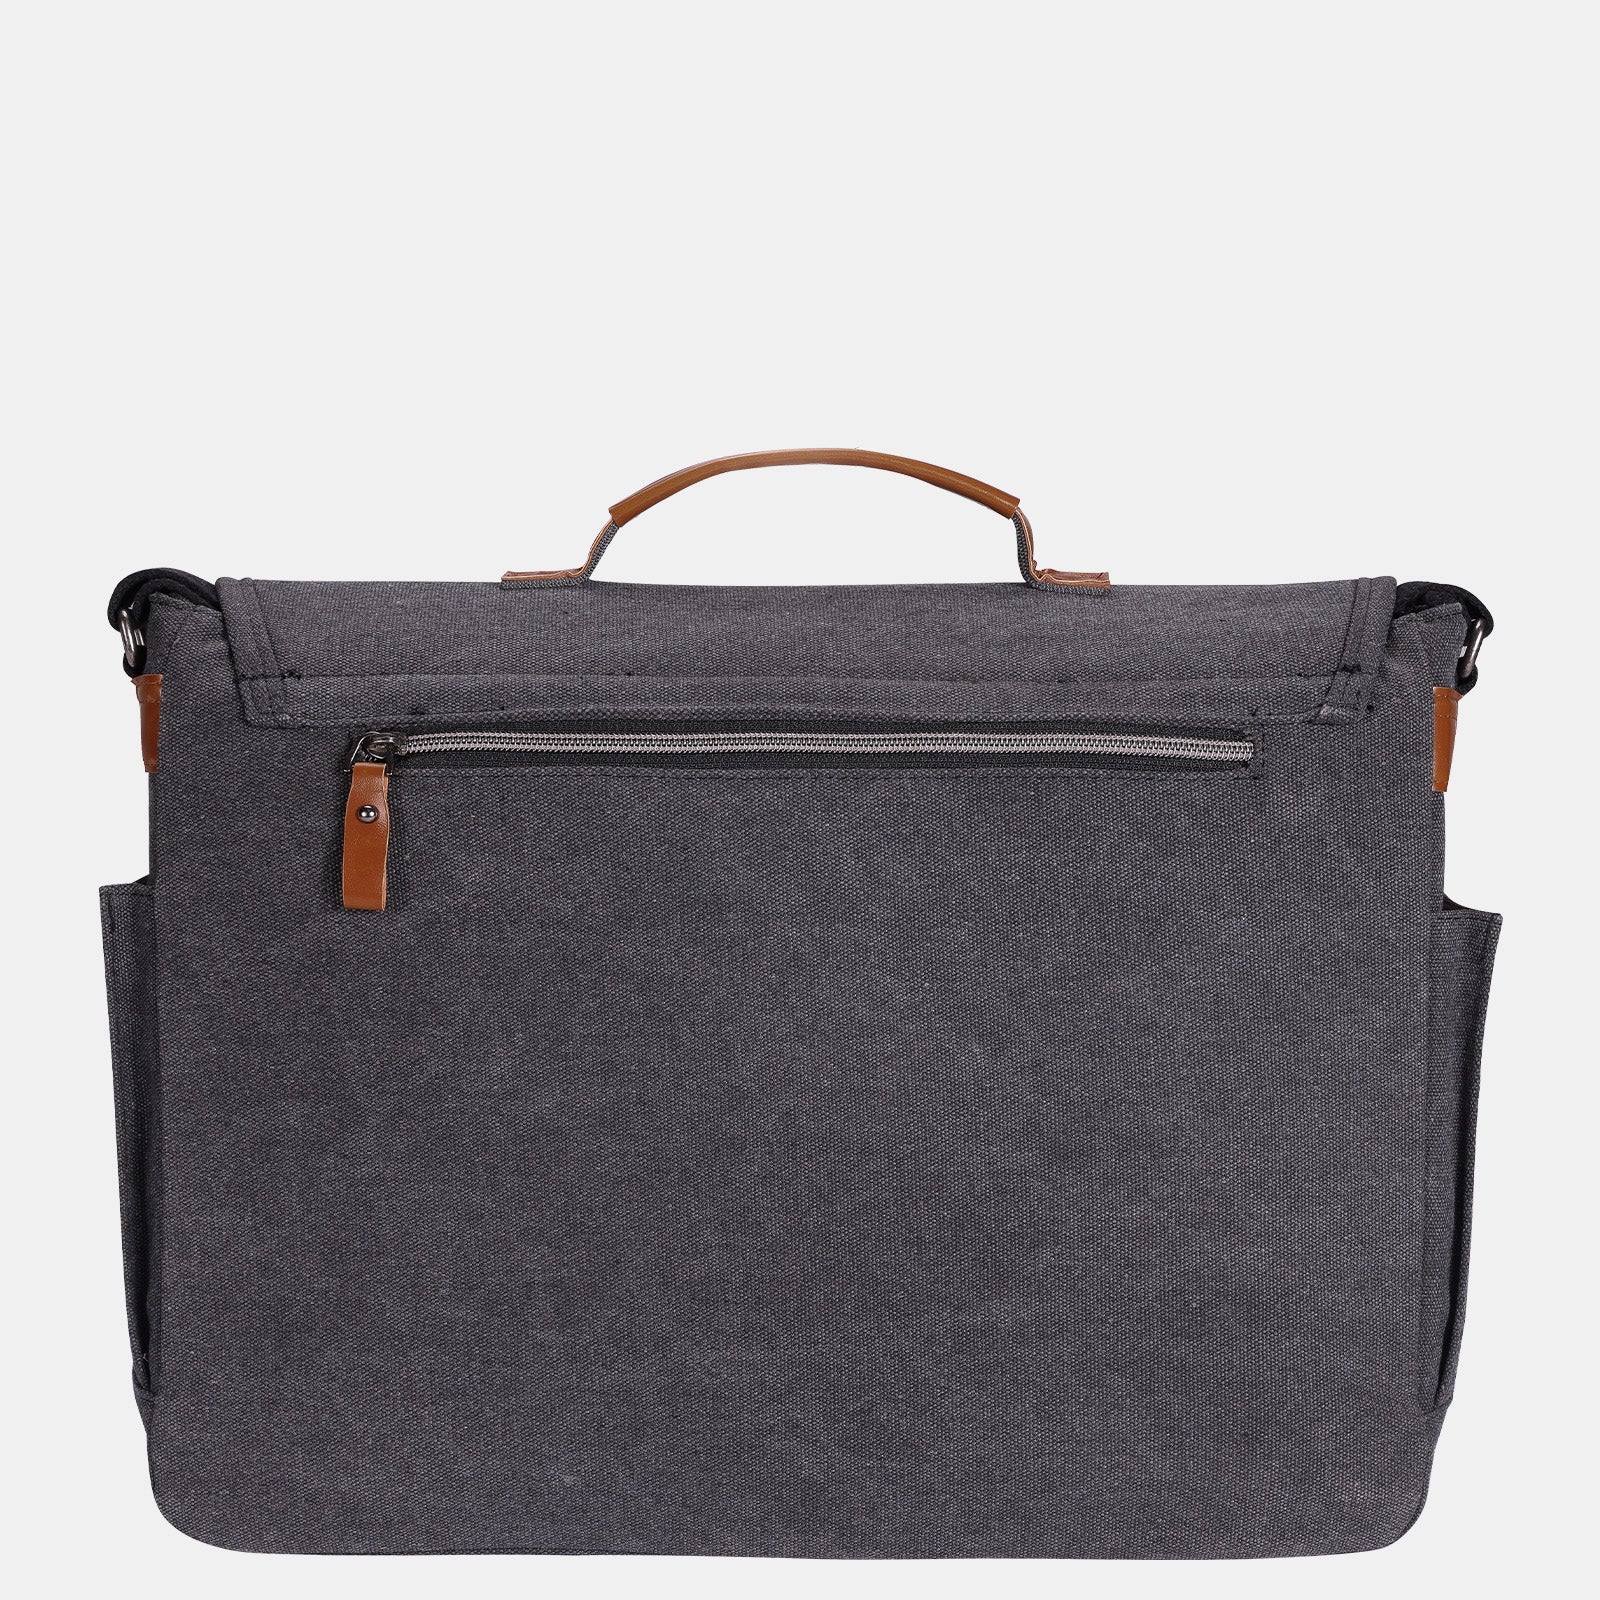 Estarer Large Laptop Messenger Bag Dark Grey